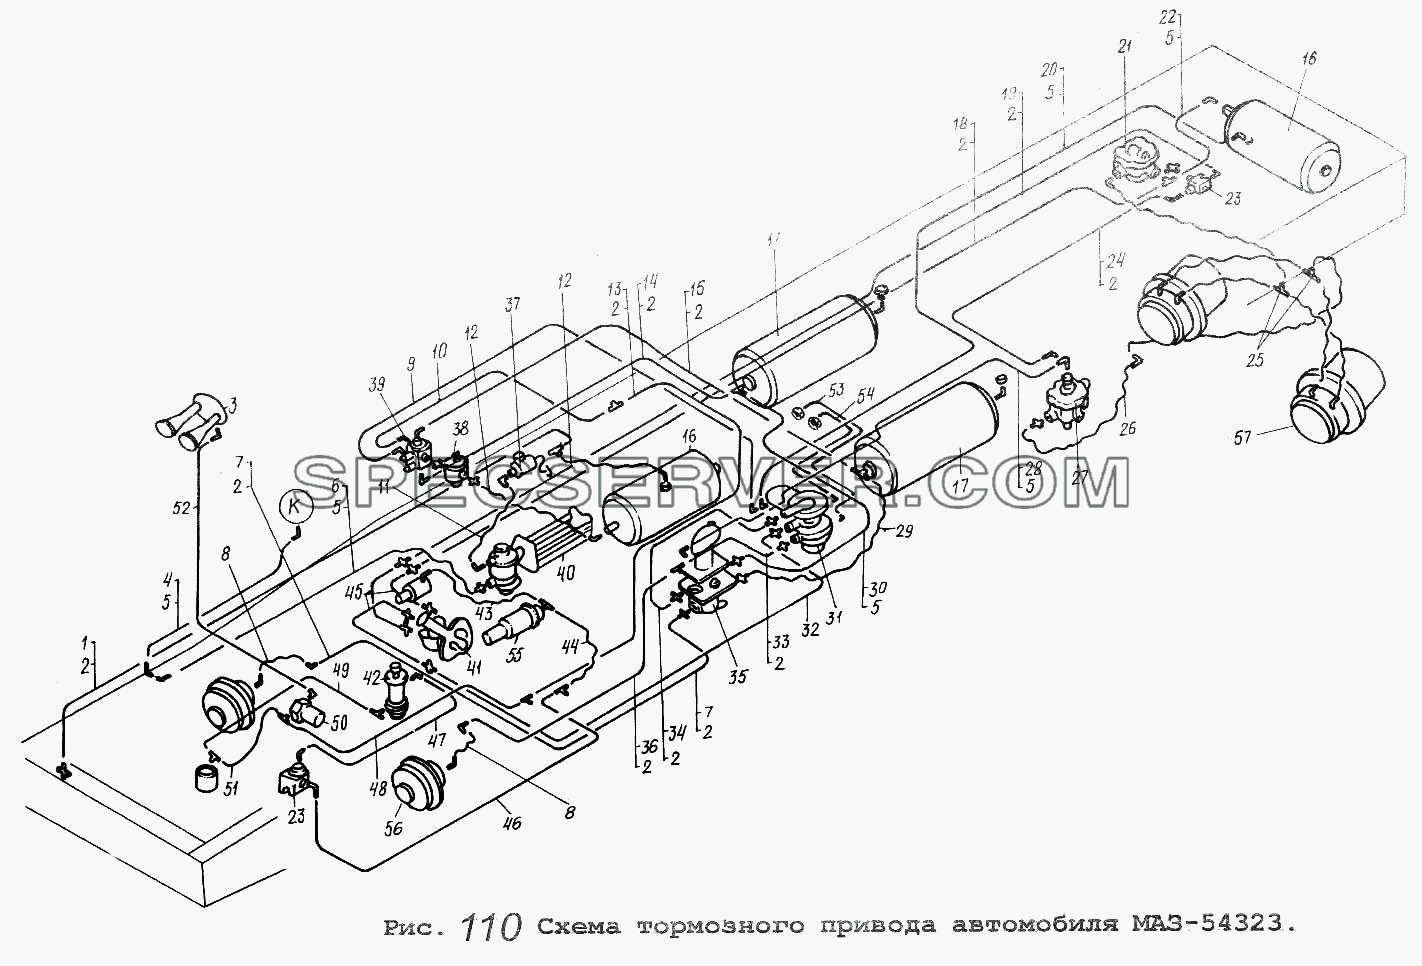 Схема тормозного привода автомобиля МАЗ-54323 для МАЗ-54323 (список запасных частей)